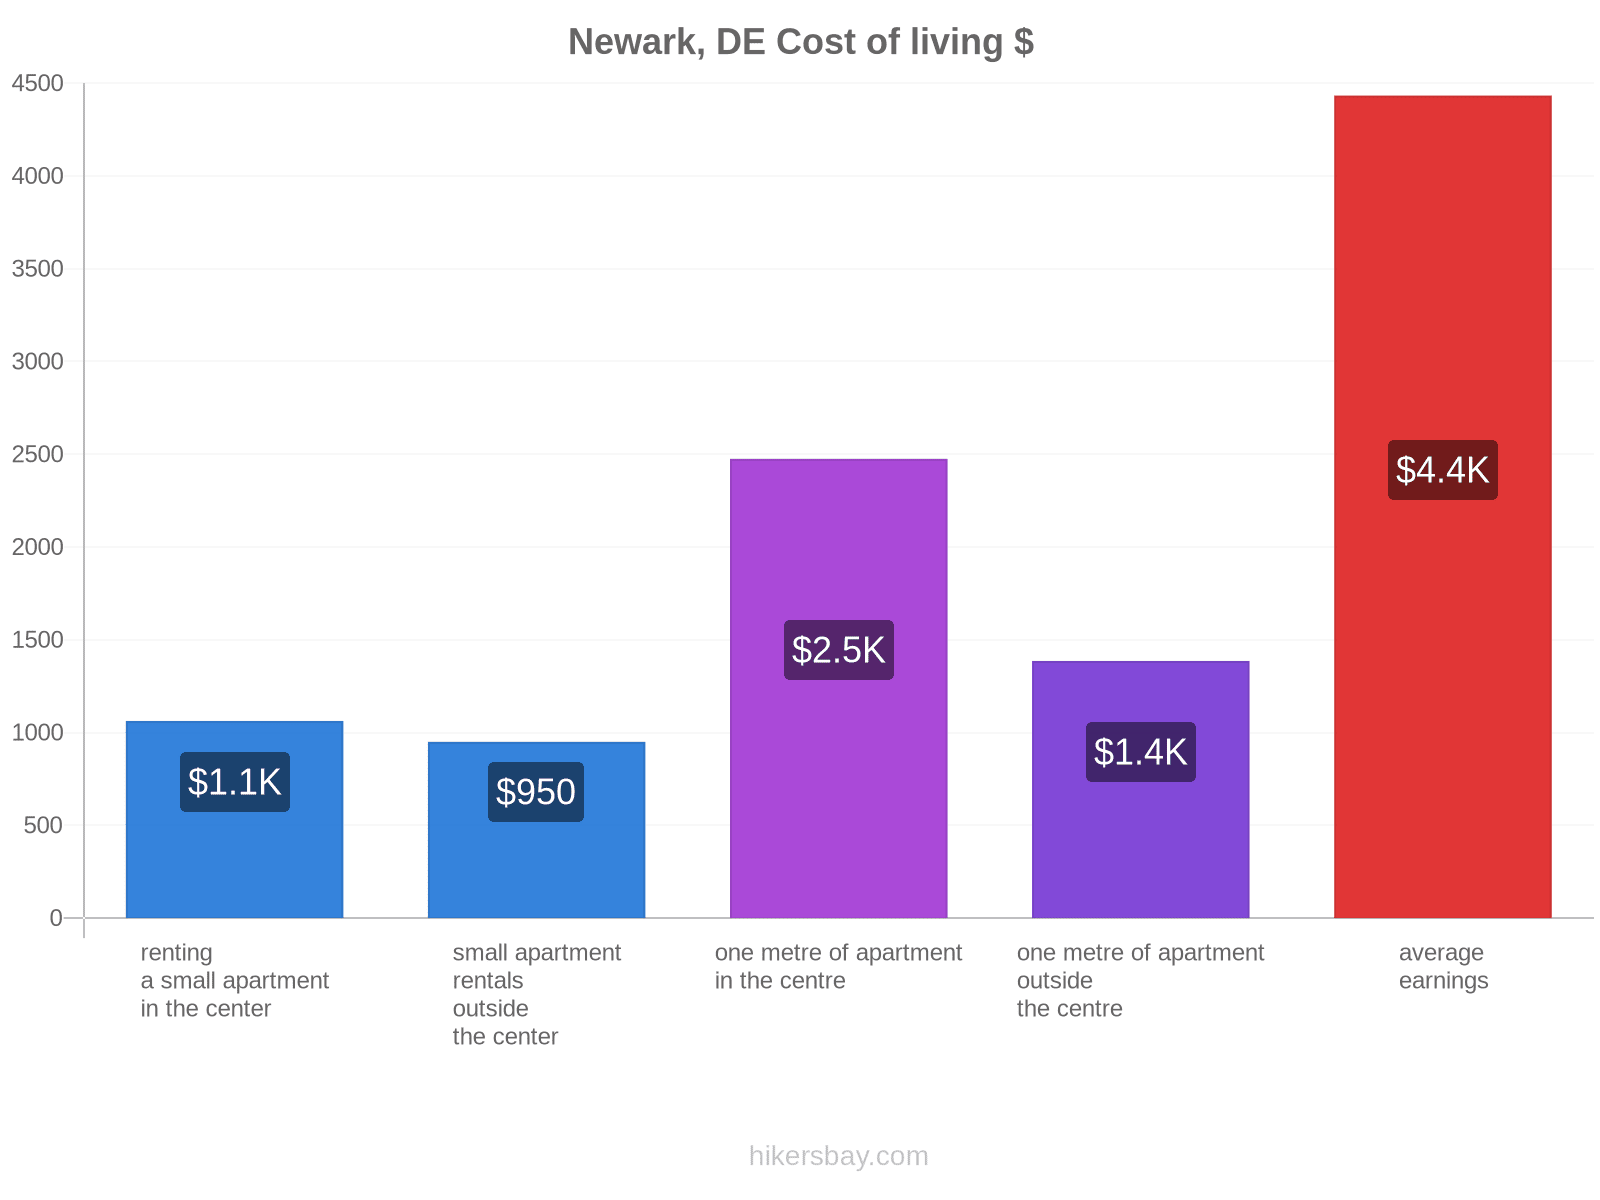 Newark, DE cost of living hikersbay.com